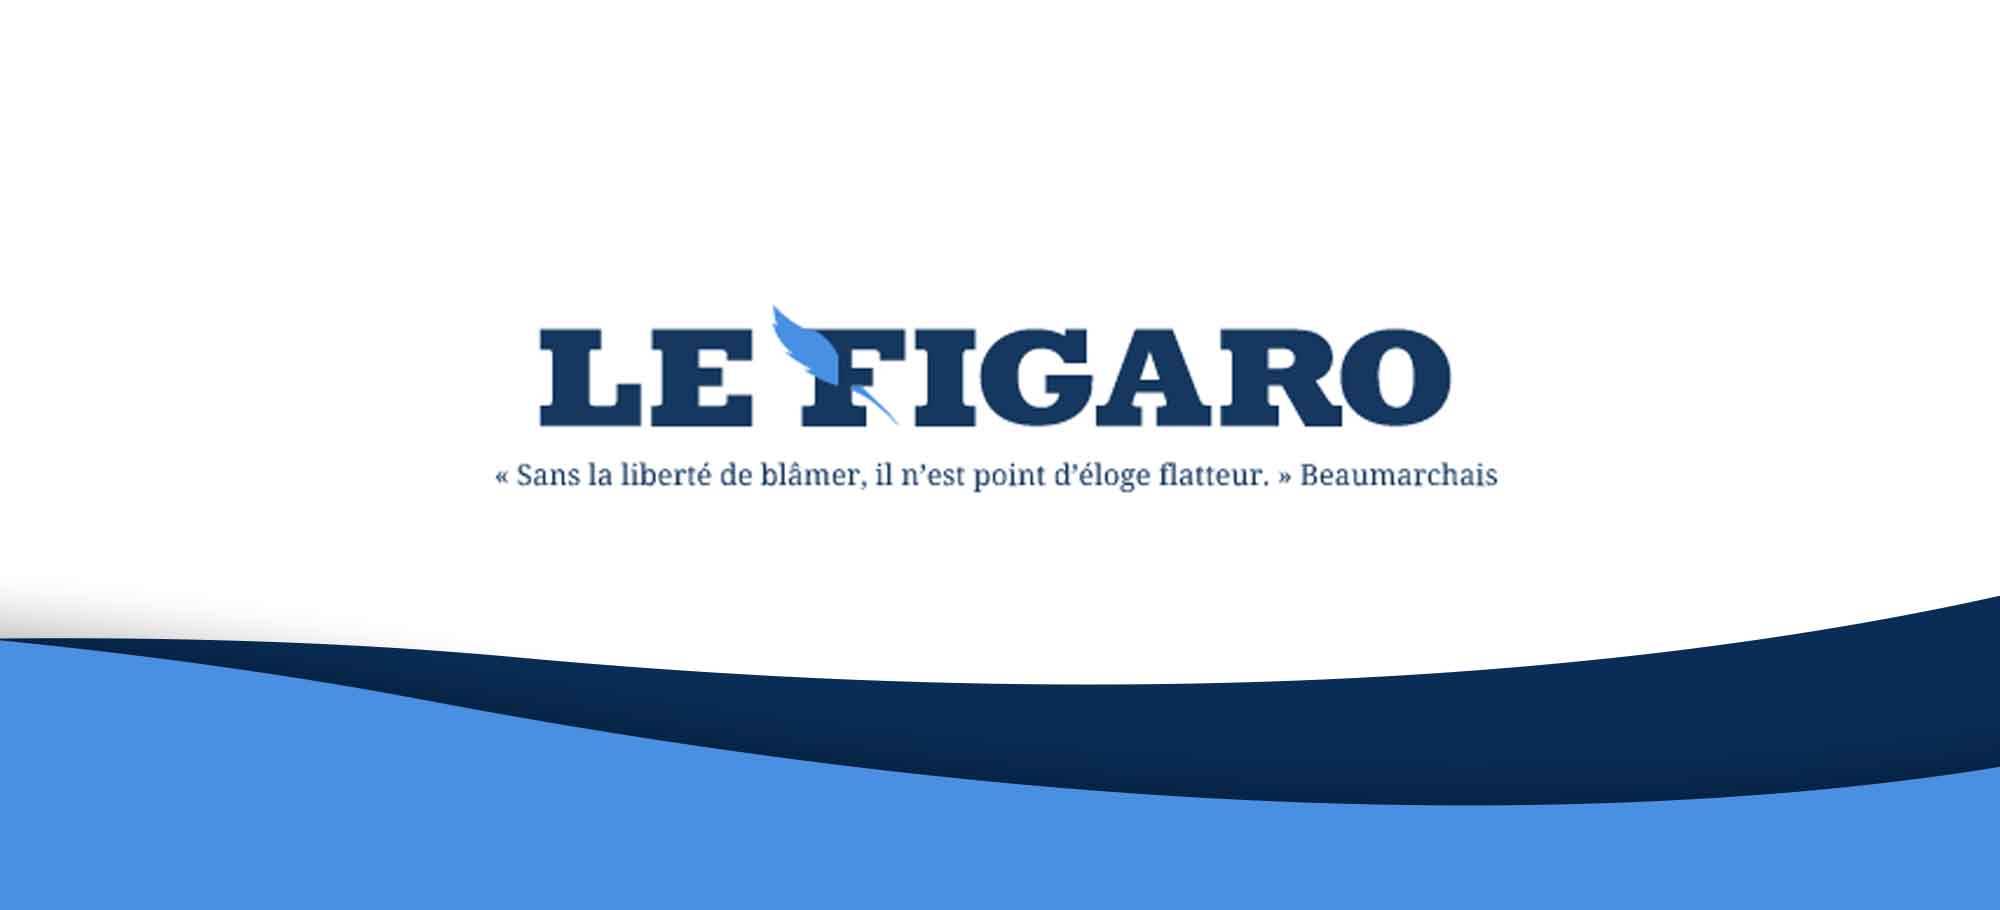 You are currently viewing Focus sur Le Figaro, votre premier quotidien d’actualités en ligne